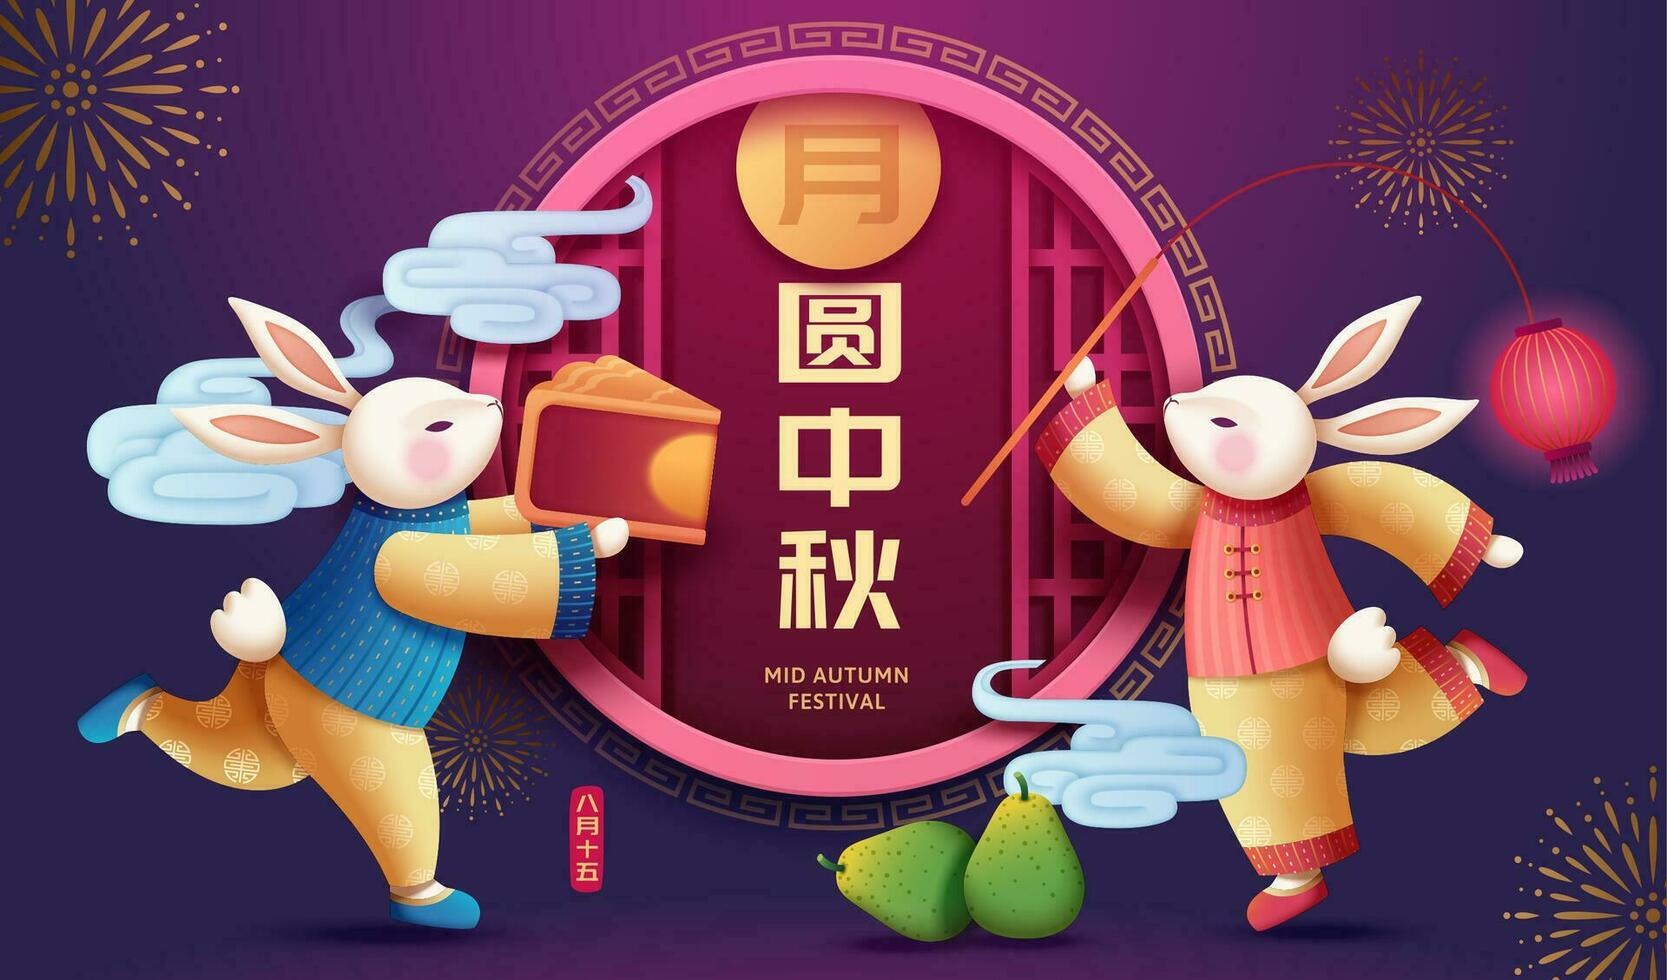 linda Conejo que lleva Pastel de luna y rojo linterna con el chino ventana marco en púrpura fondo, medio otoño festival escrito en chino palabras vector